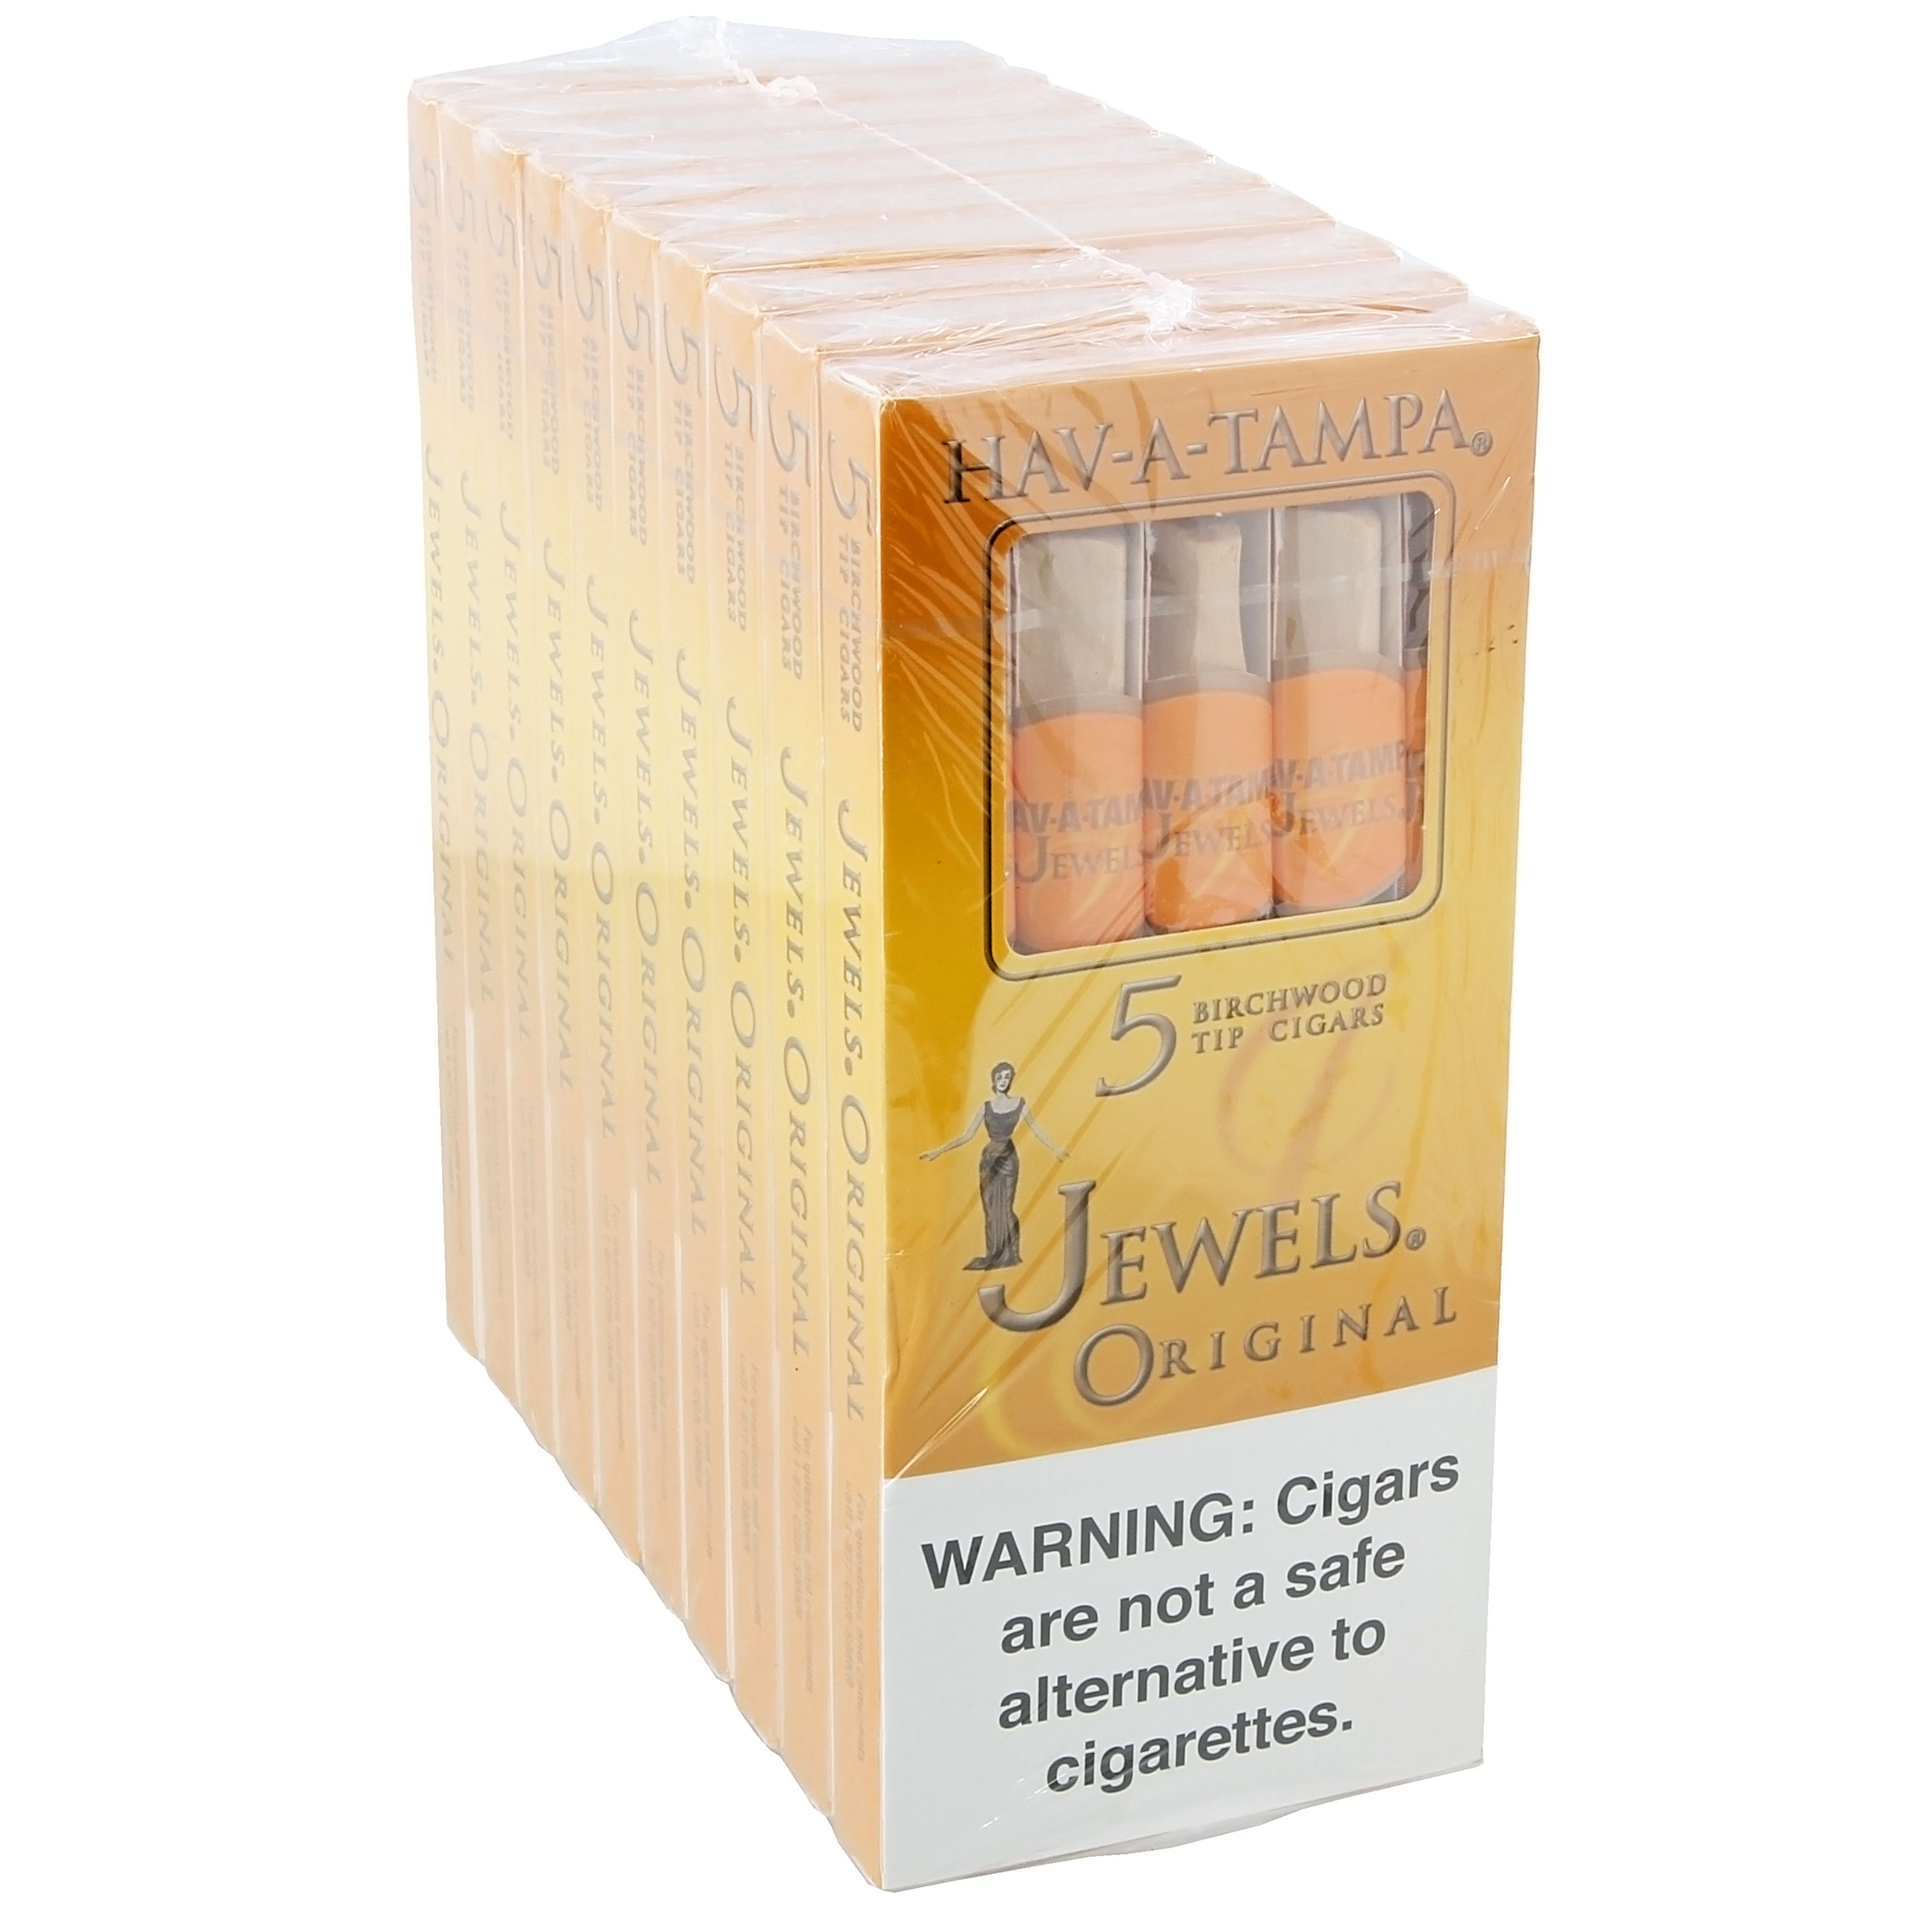 Đánh giá nhanh xì gà mini HAV-A-TAMPA Jewels Original